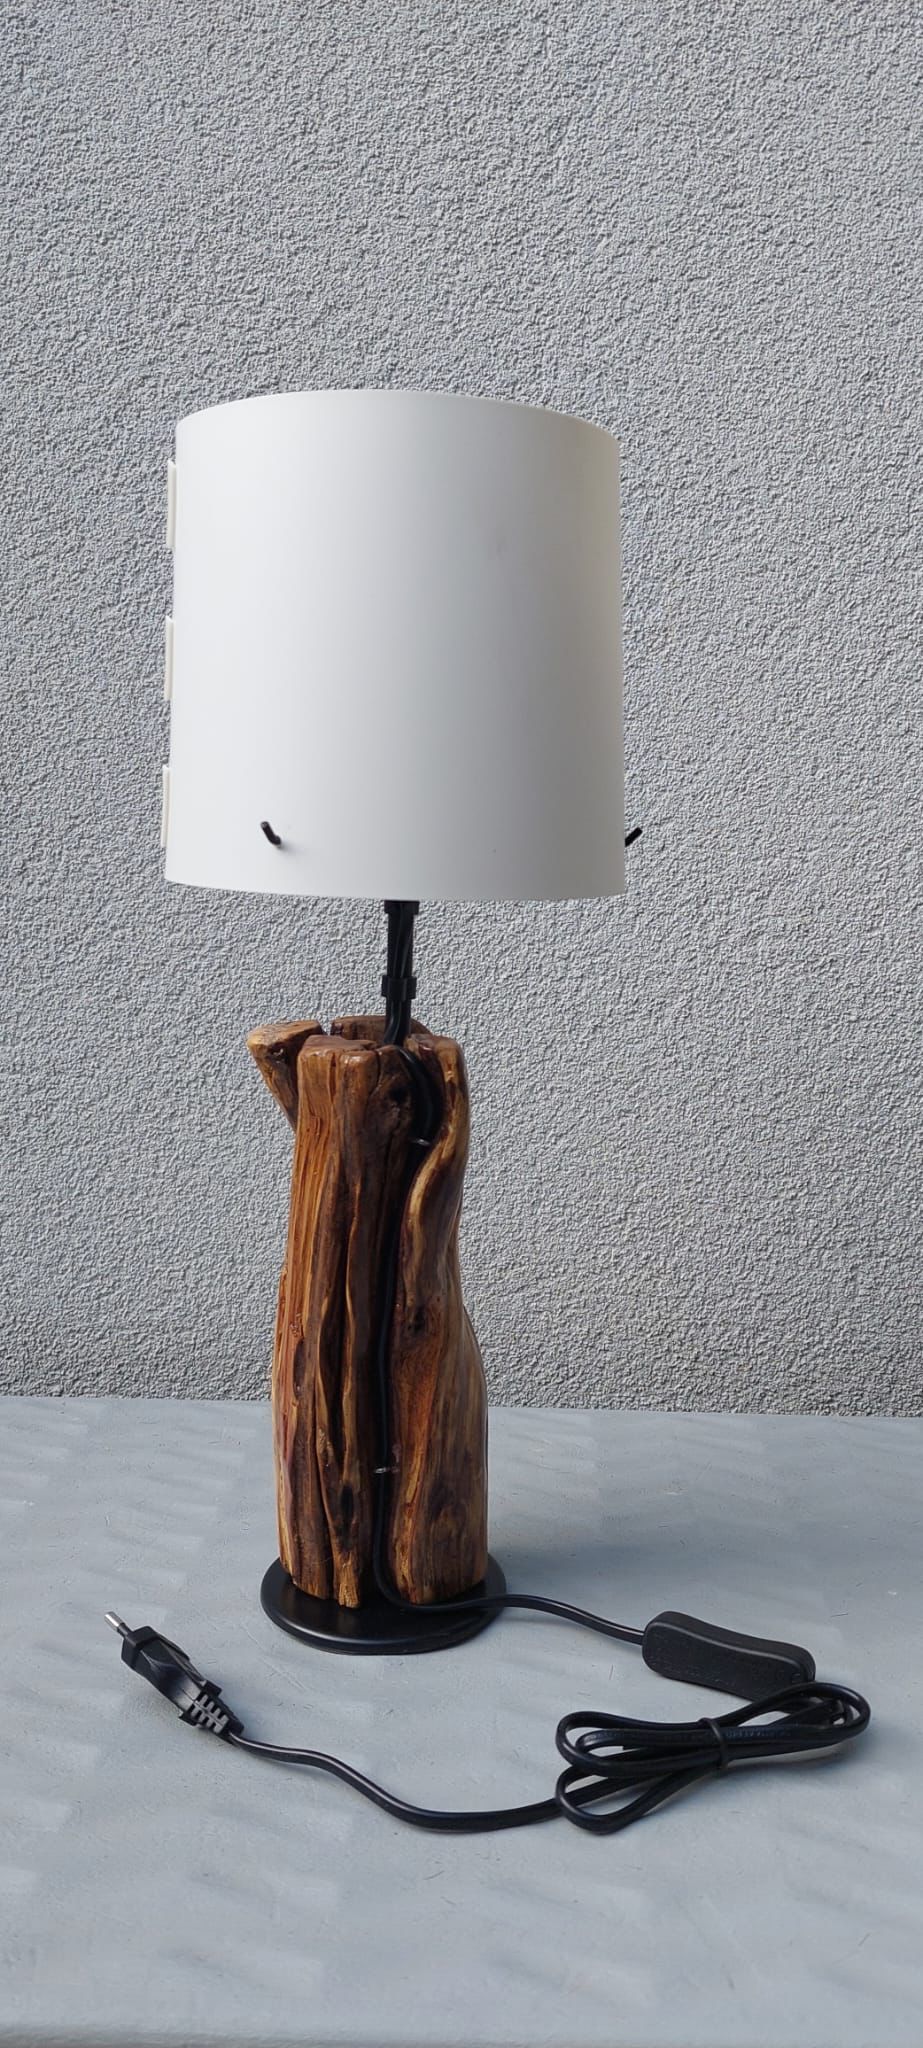 LAMPE (Treibholz) / LAMPA